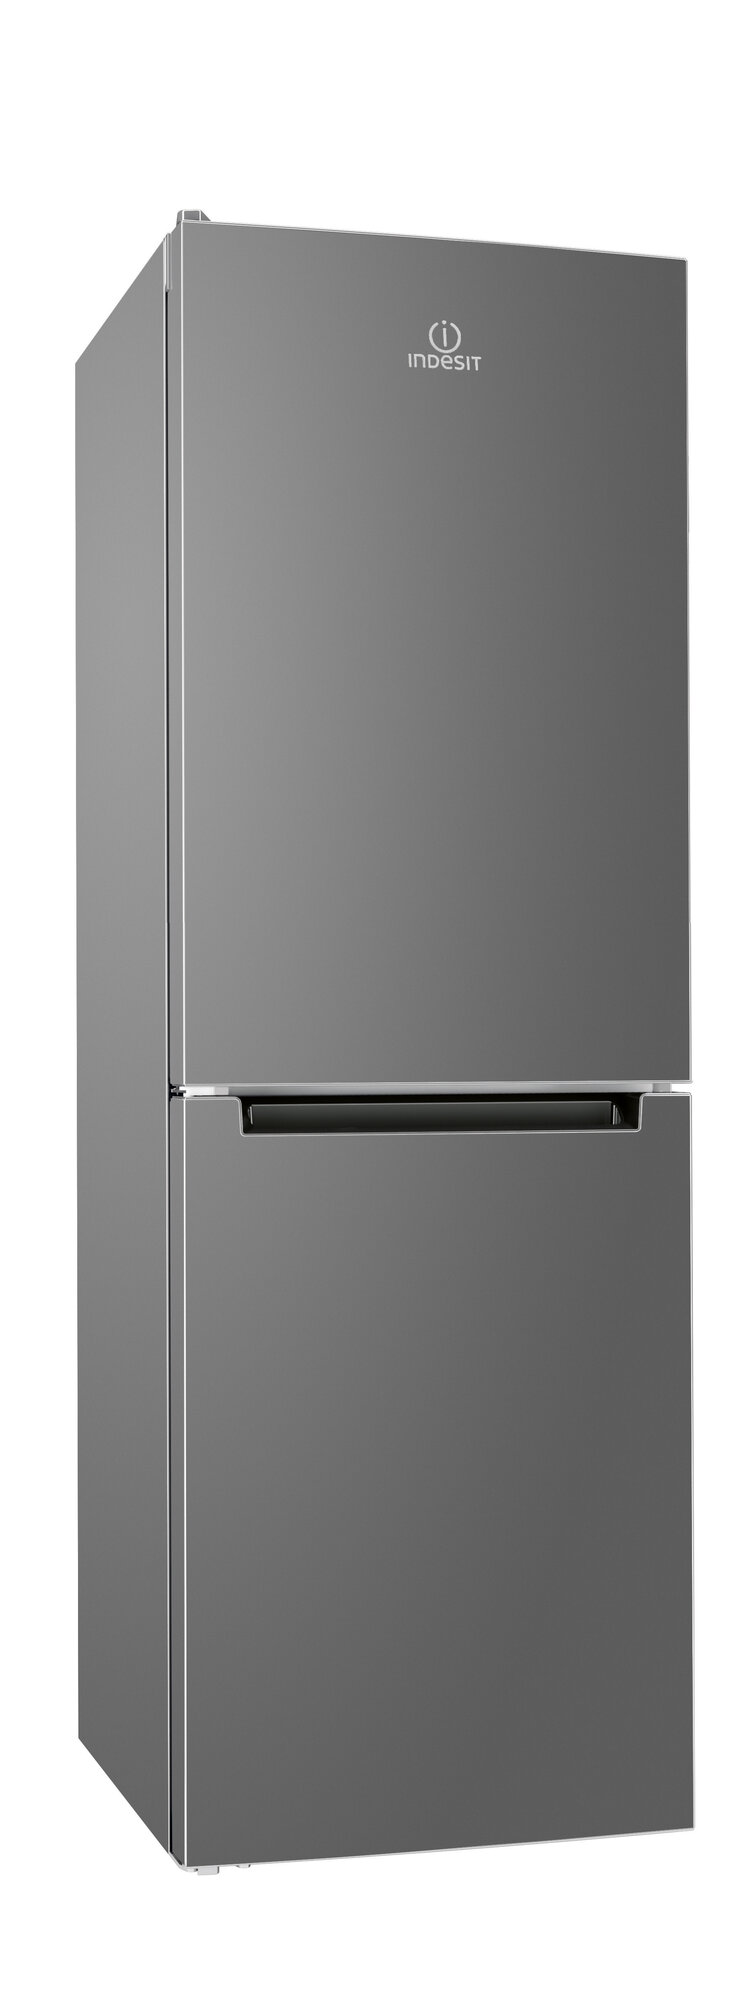 Двухкамерный холодильник Indesit DS 4160 G, серебристый - фотография № 1